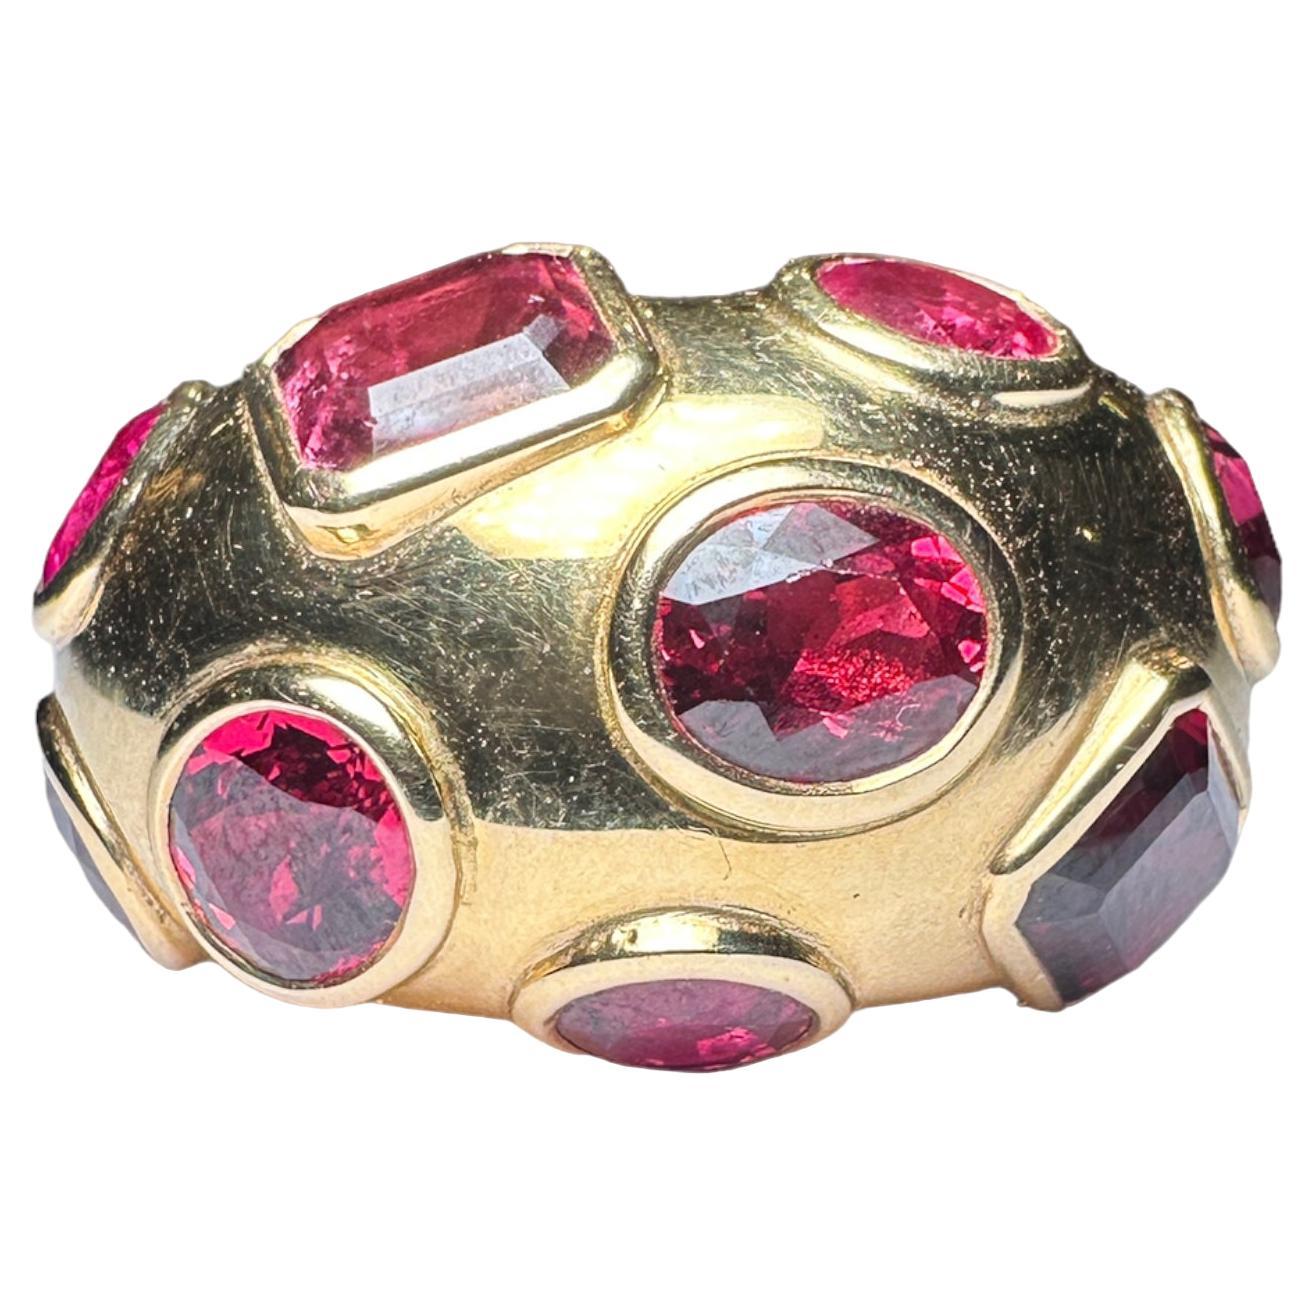 18 Karat Gold Ring mit Rubinen, Rubellit-Turmalinen und roten Spinellen